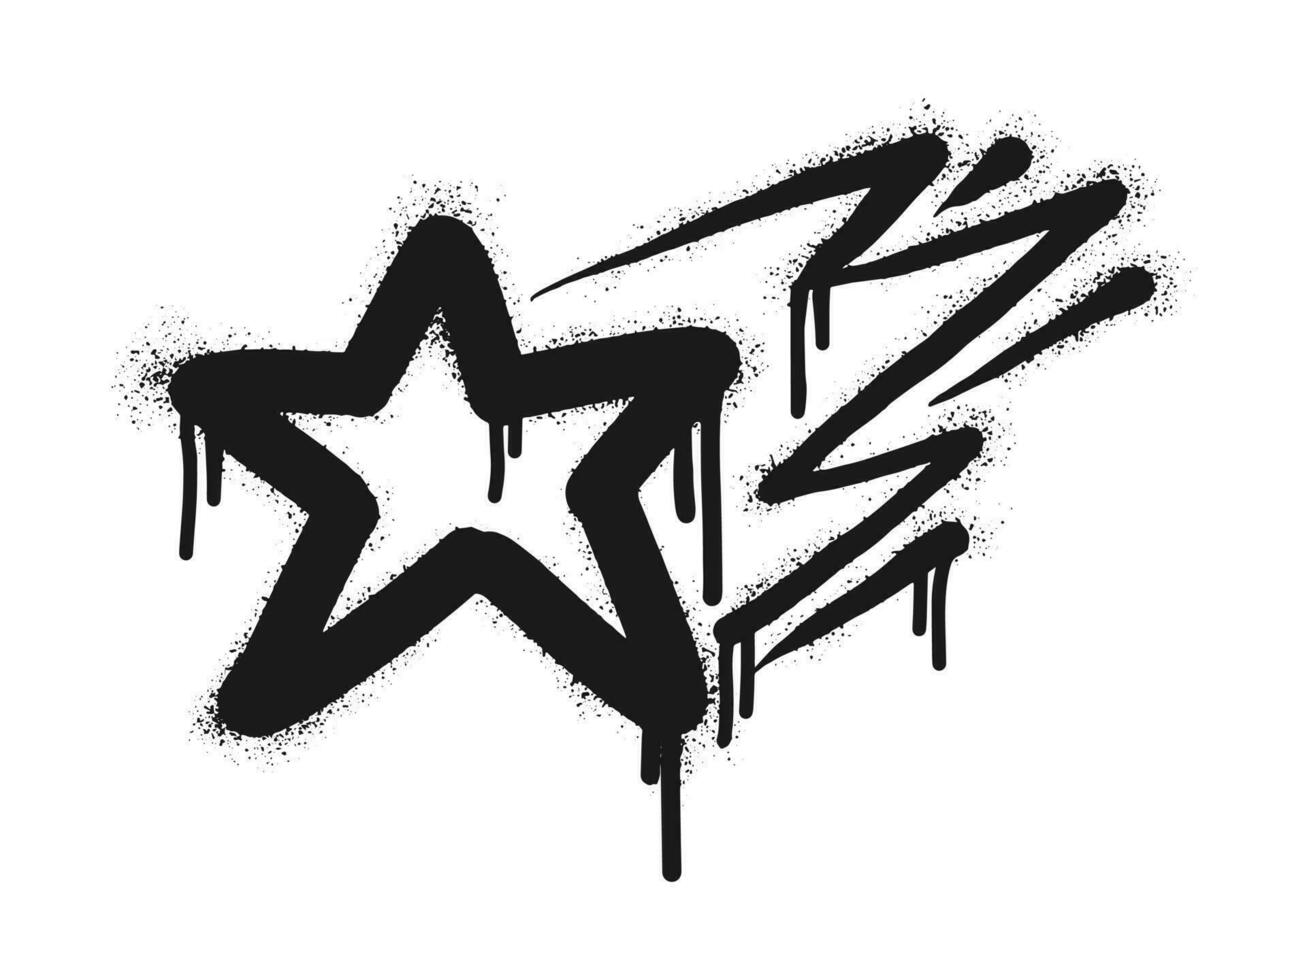 spray målad graffiti stjärna tecken i svart över vit. stjärna droppa symbol. isolerat på vit bakgrund. vektor illustration